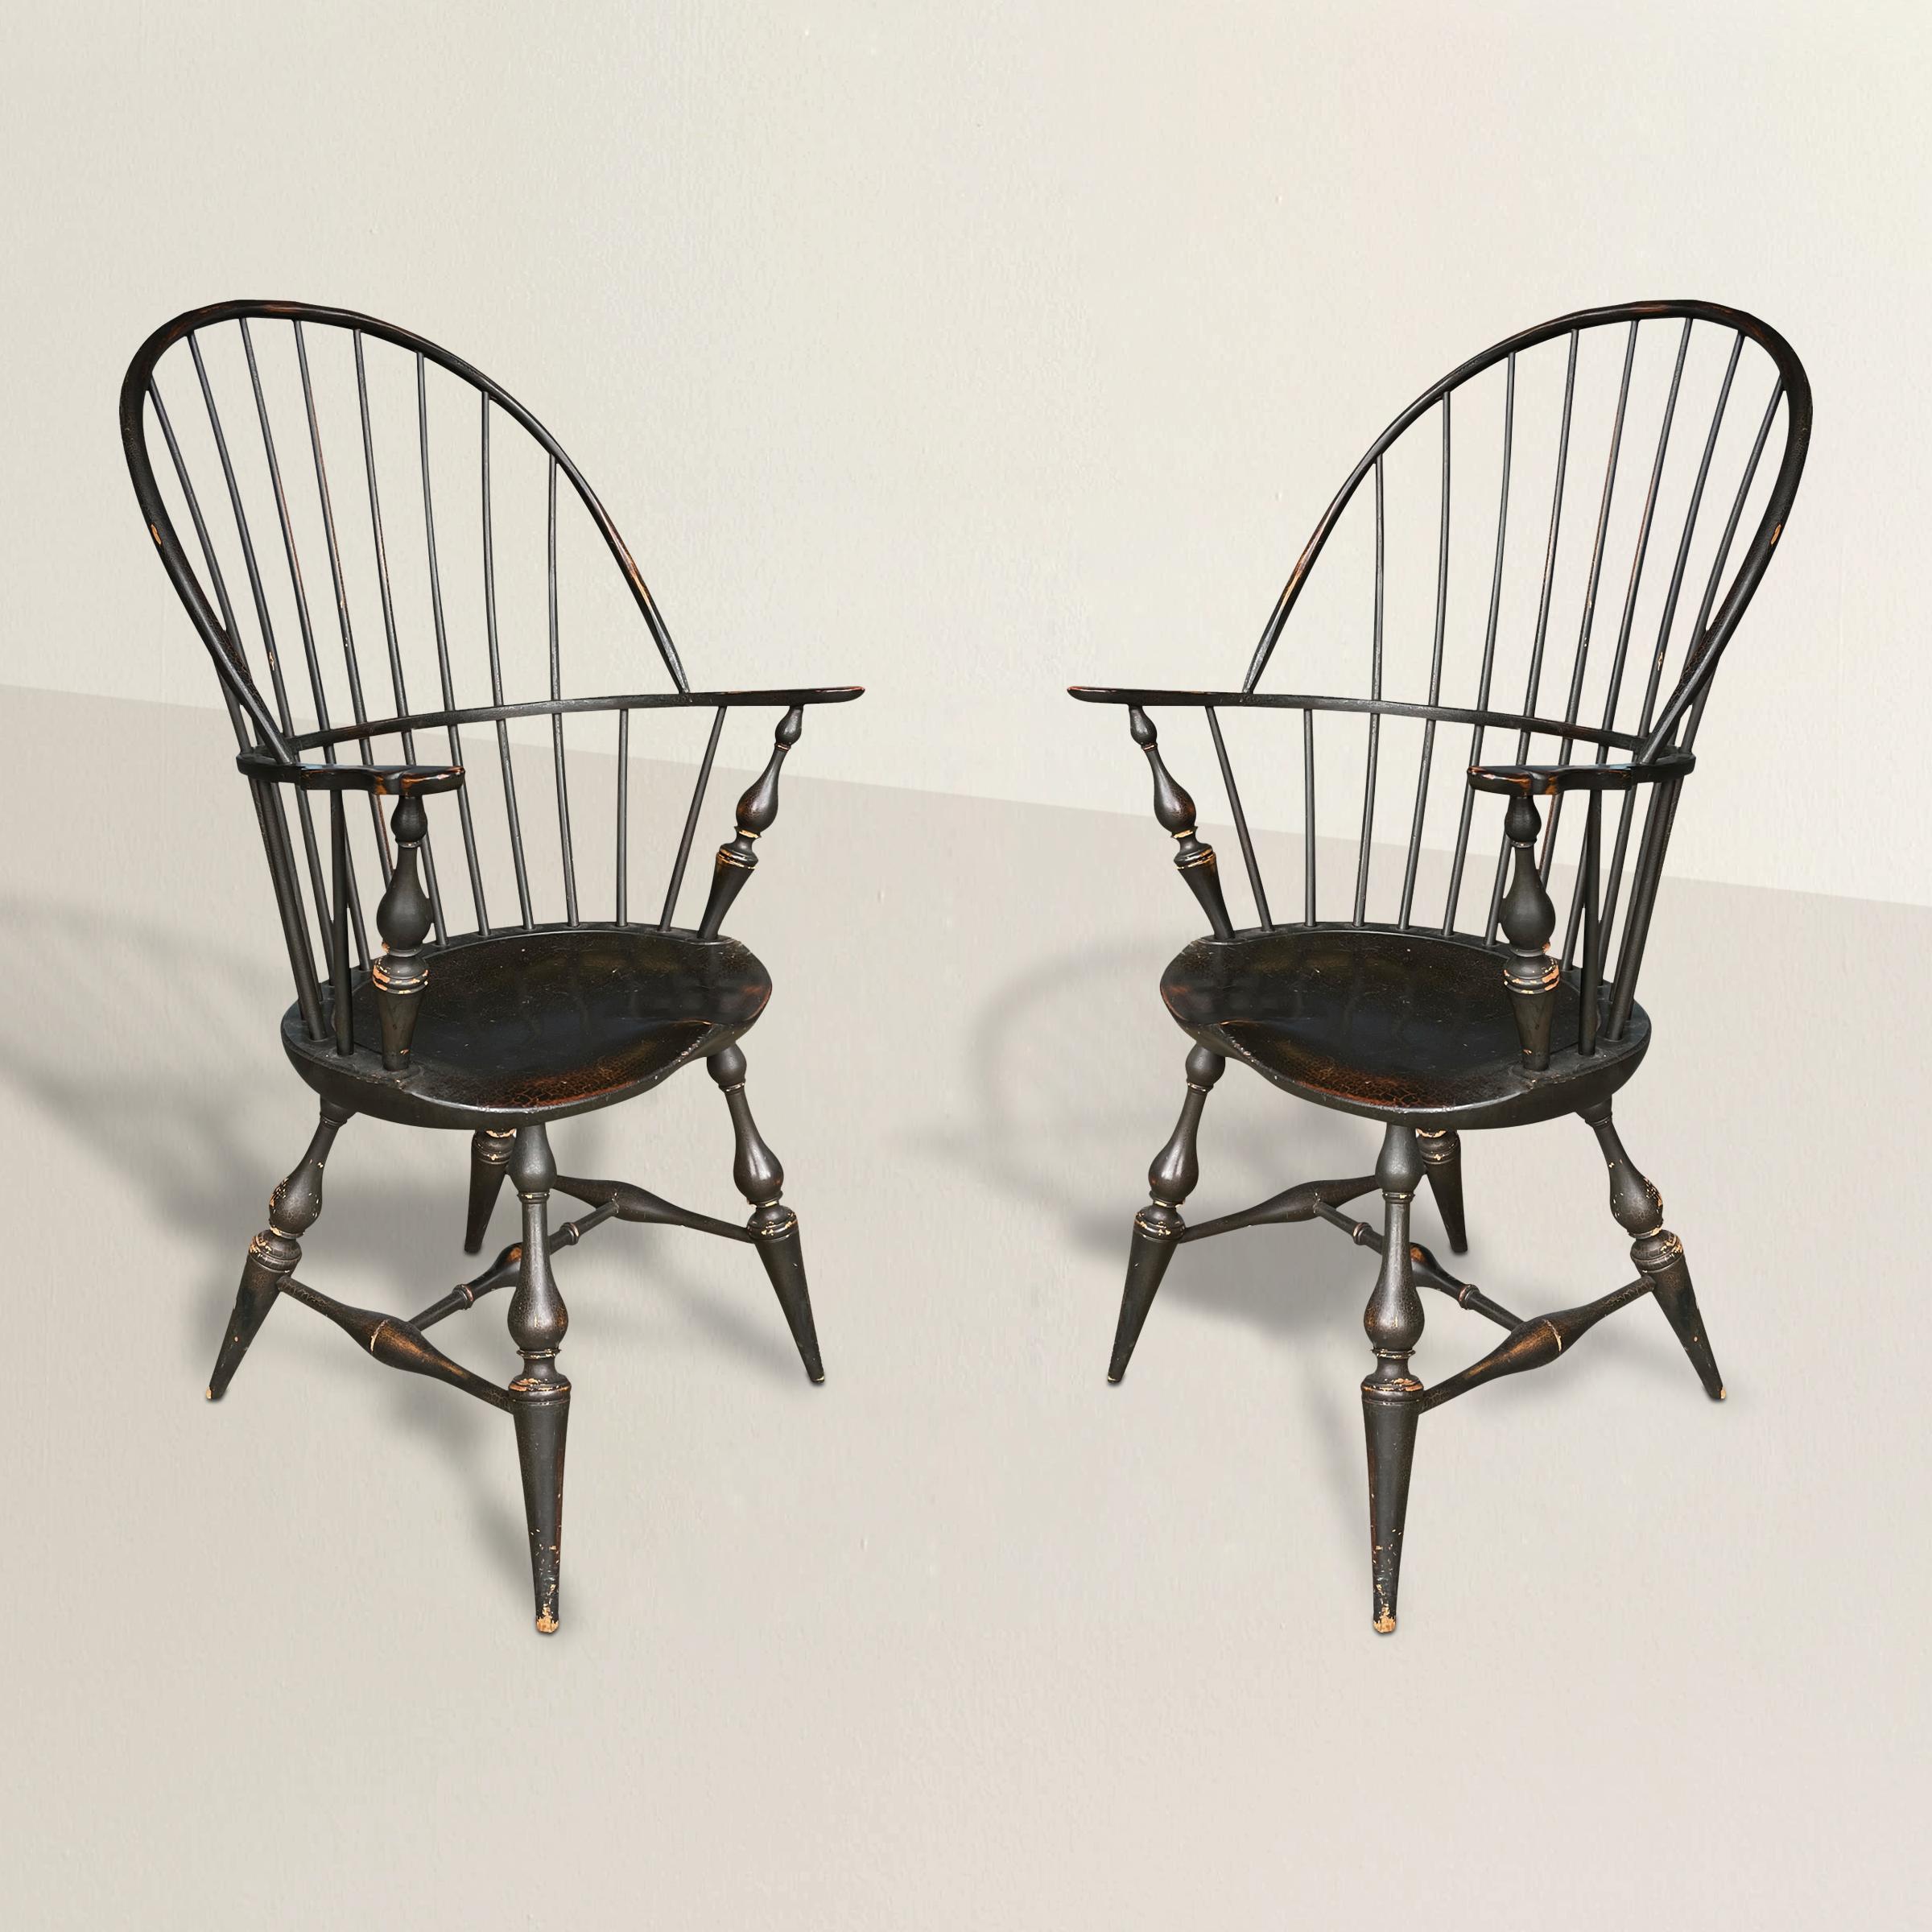 Paire de chaises Windsor américaines du 20e siècle avec dossier en arceau continu, assise en selle, pieds tournés se terminant par des pieds étroits, et leurs finitions d'origine peintes en noir. Parfait pour une table à manger, ou pour flanquer la